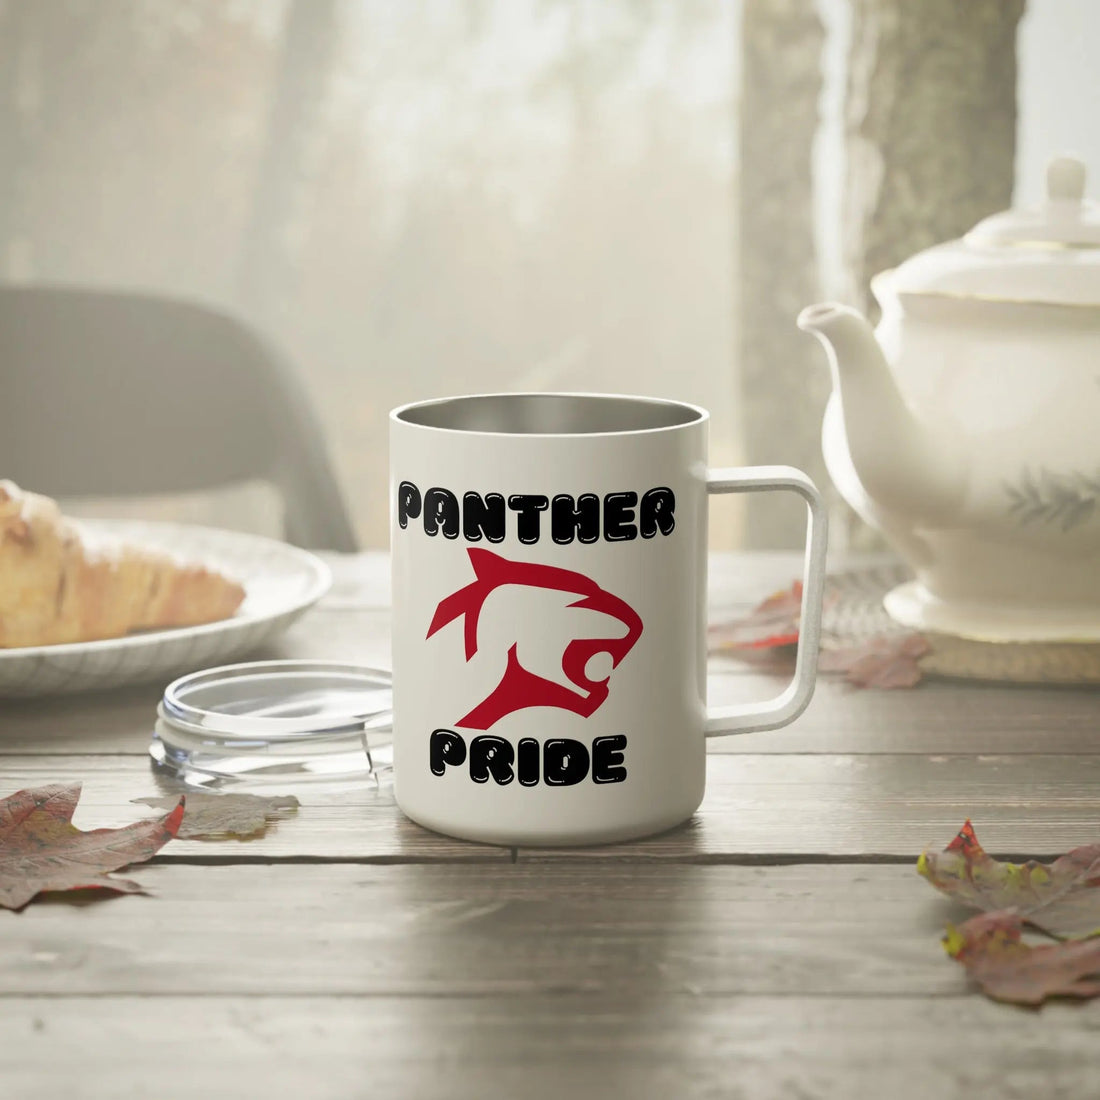 Panther Pride Insulated Coffee Mug, 10oz - Mug - Positively Sassy - Panther Pride Insulated Coffee Mug, 10oz